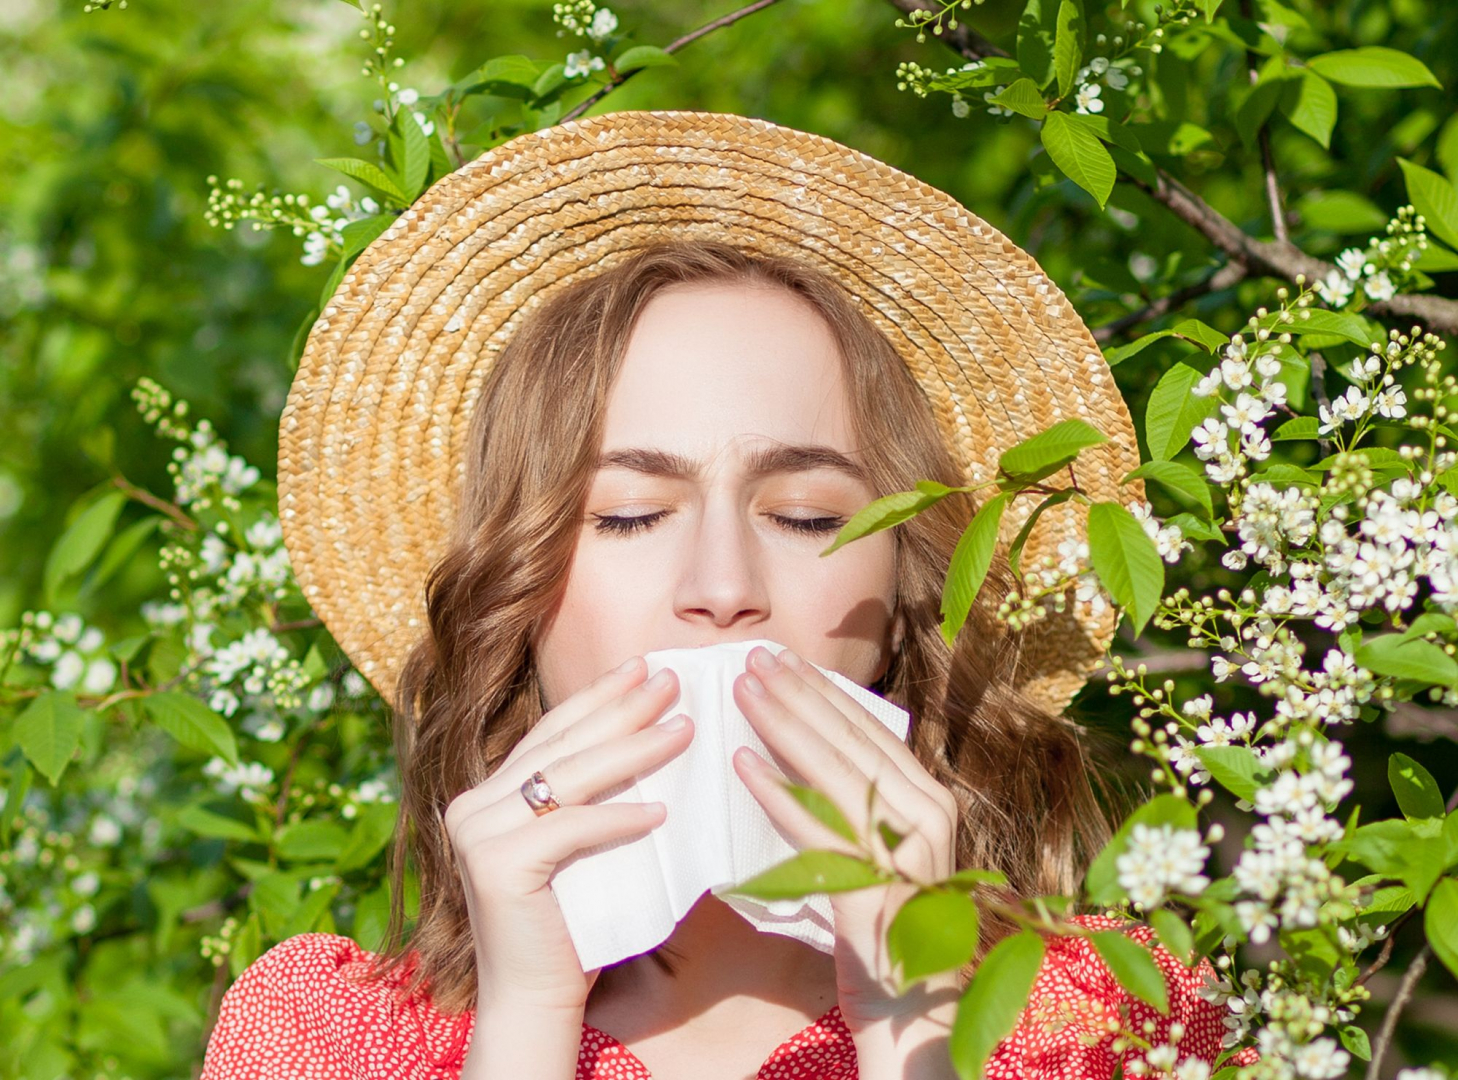  Támadnak a fapollenek – megoldások allergiára